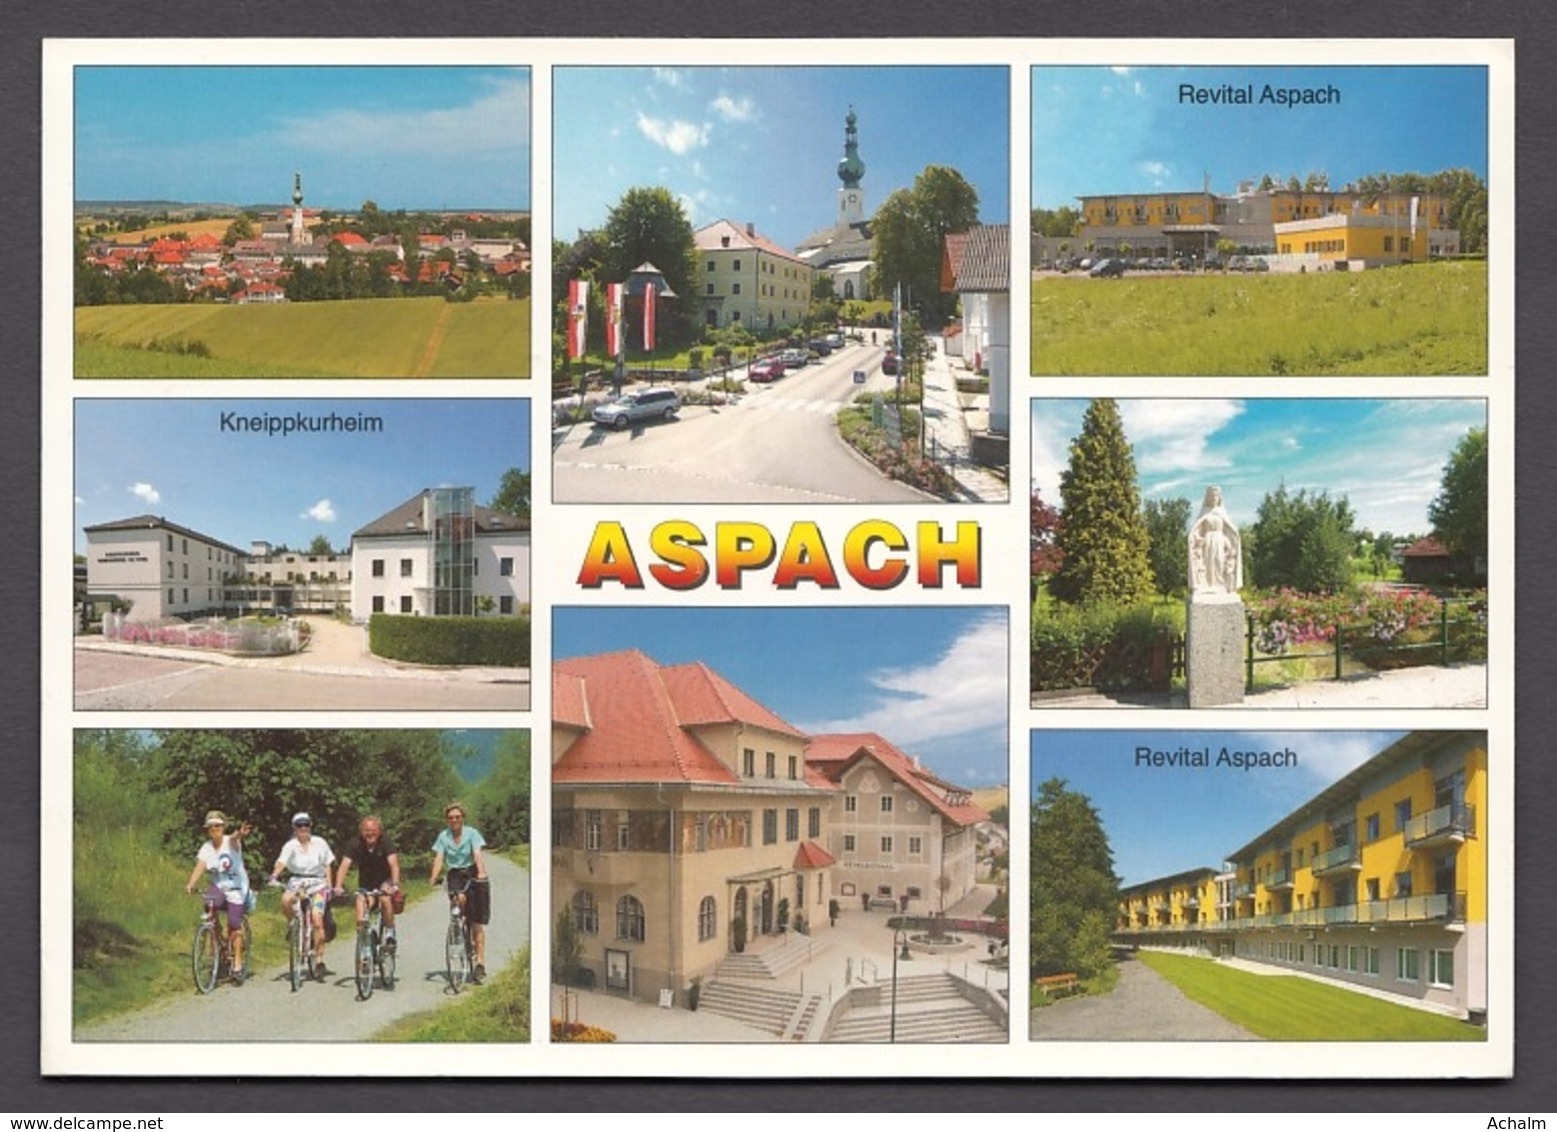 Aspach Im Innviertel Am Kobernausserwald - 8 Ansichten - Braunau